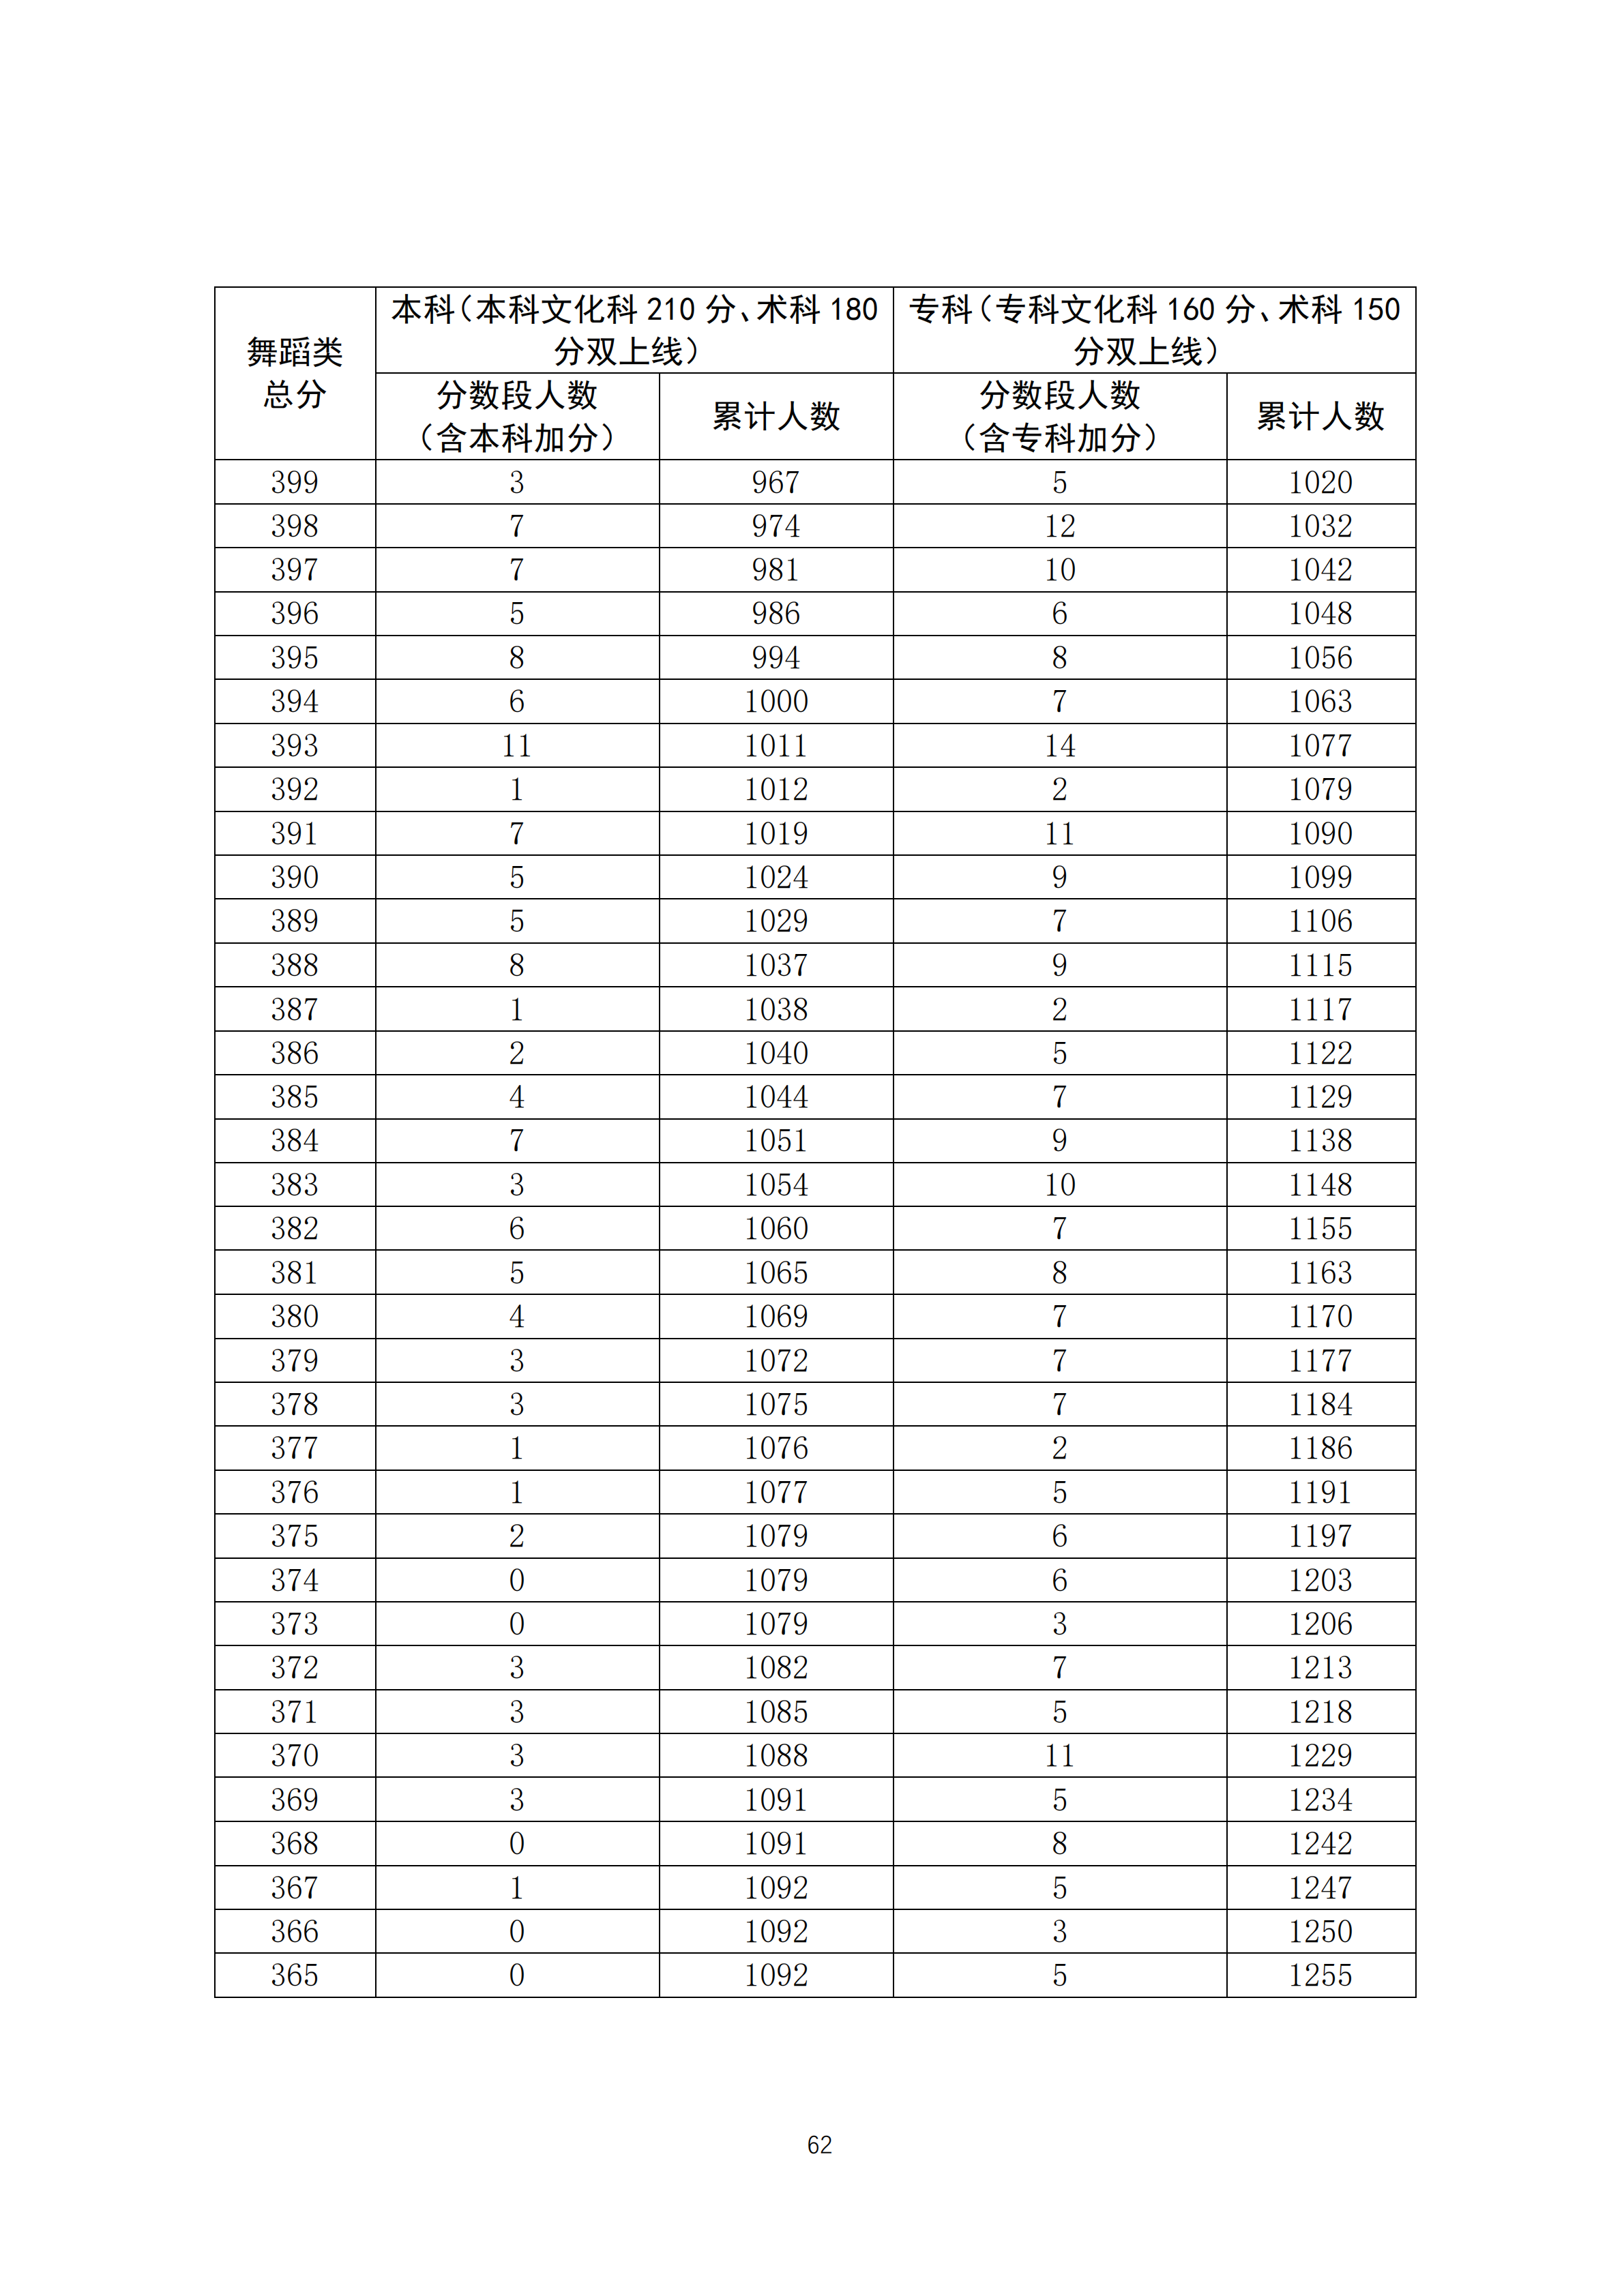 2020广东高考一分一段表 舞蹈类成绩排名